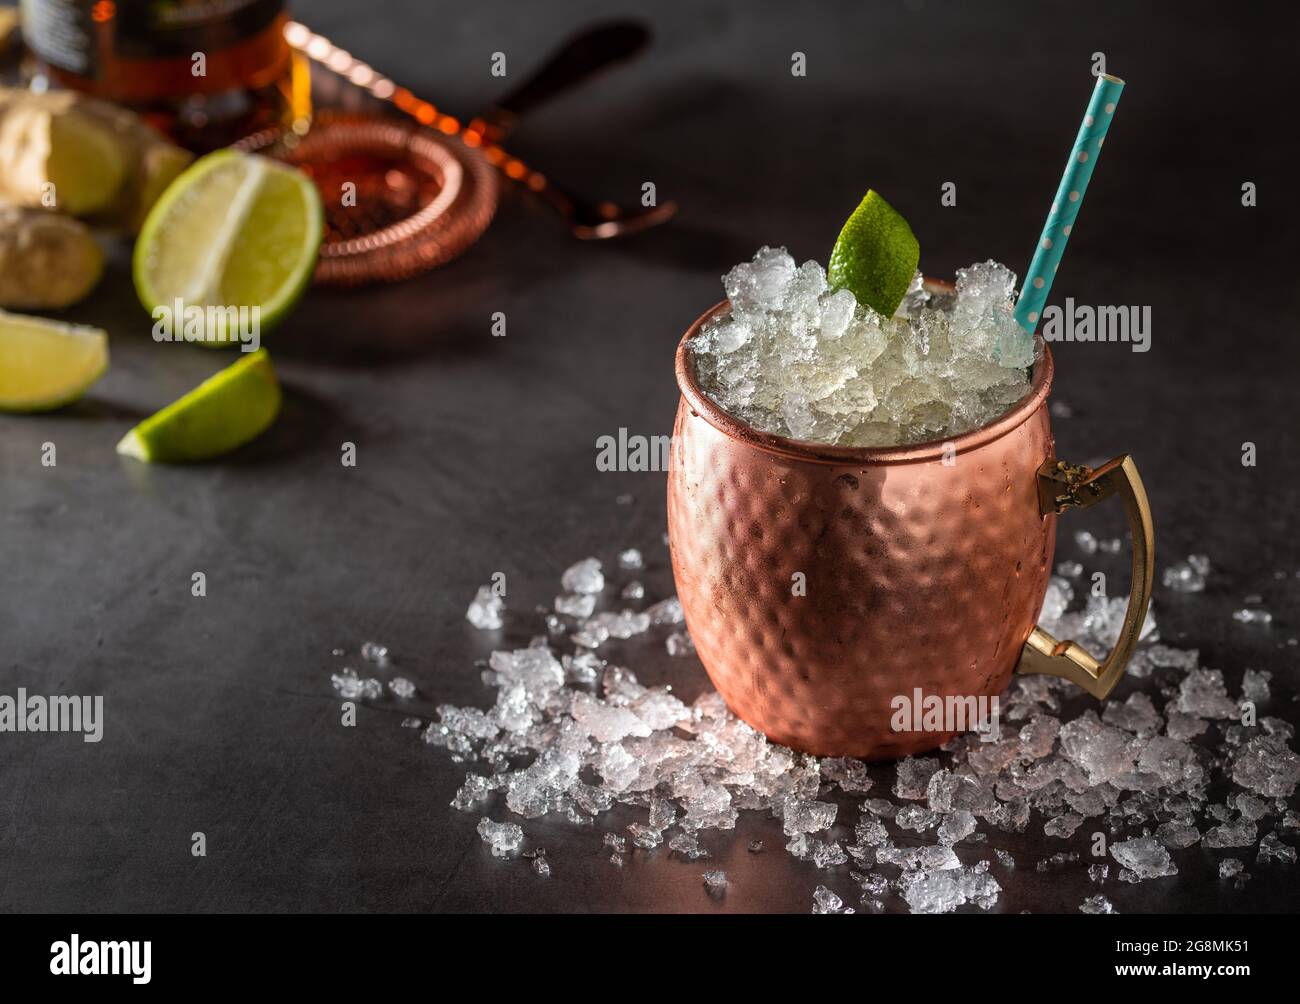 Moscow mule cocktail nella tazza di rame con lime e lo zenzero birra, vodka e menta guarnire Foto Stock